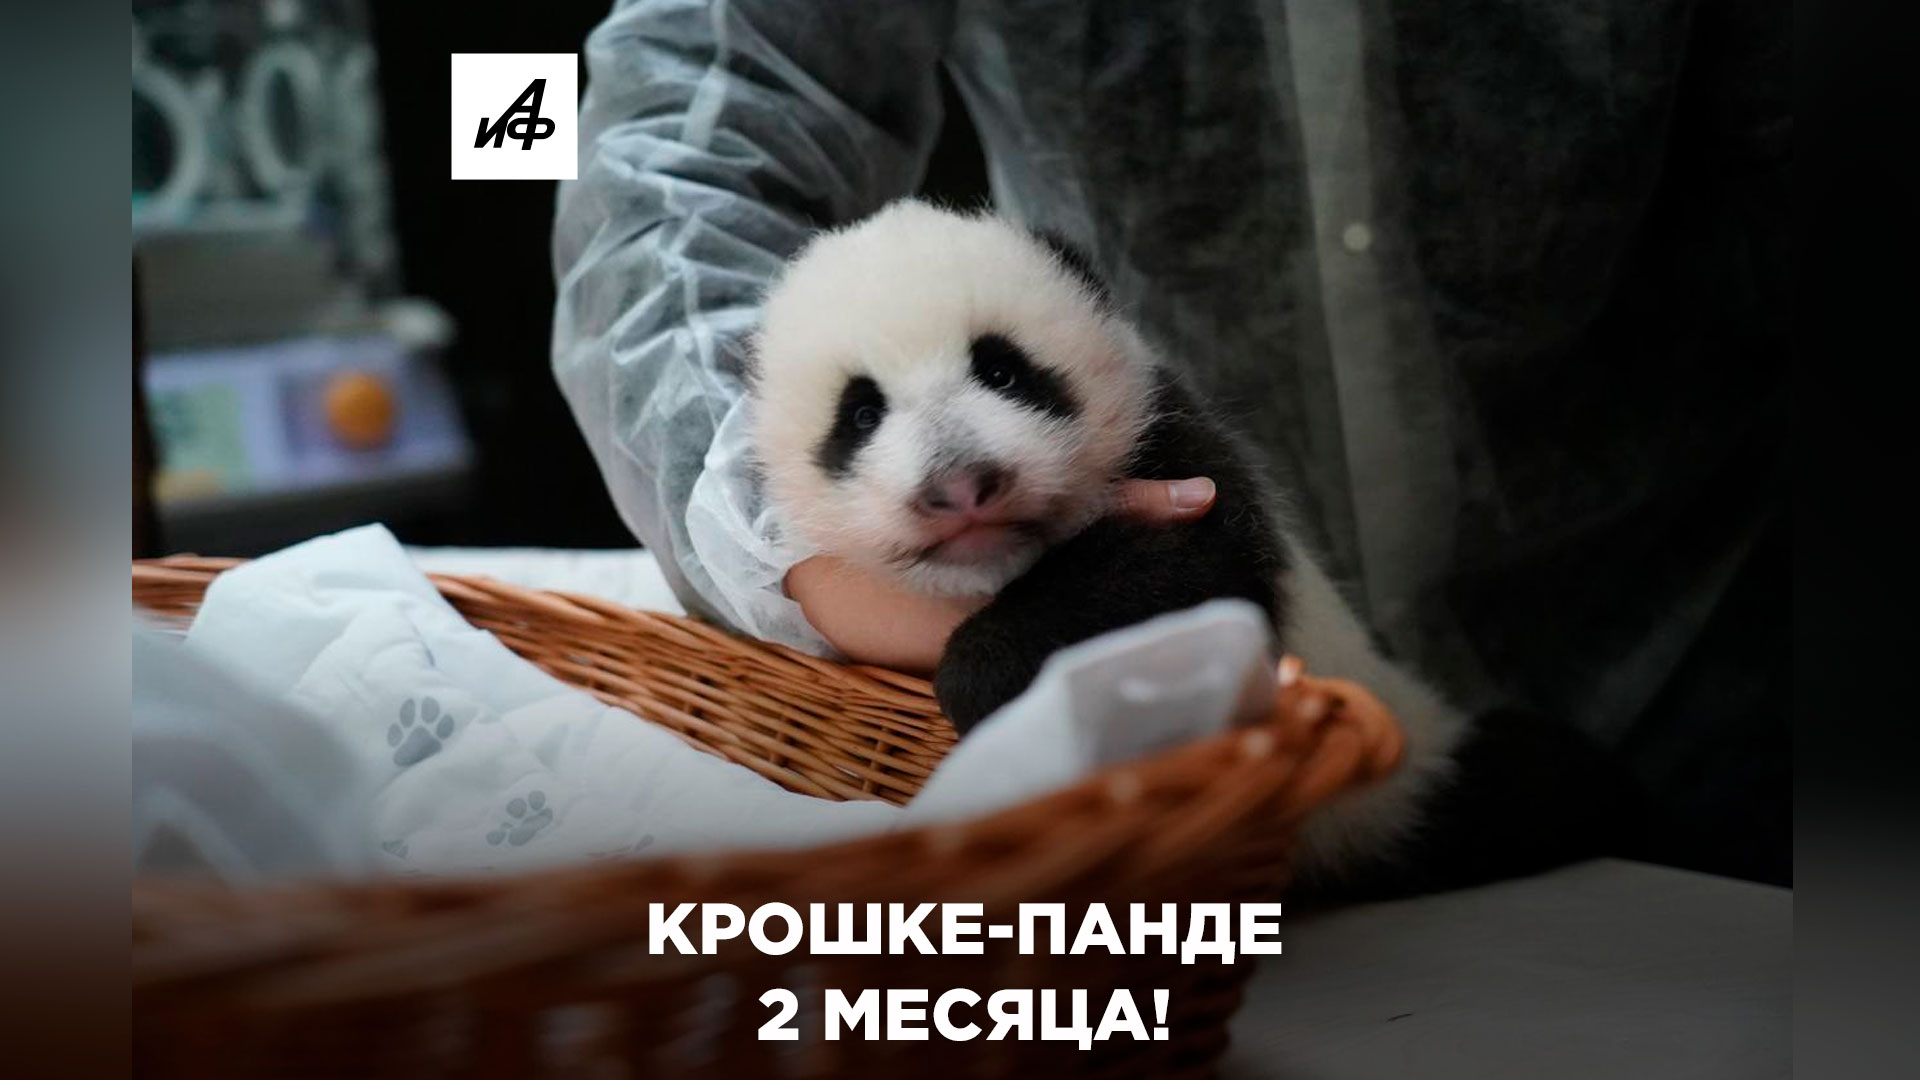 Крошка Панда. Как назвали крошку-панду москвичи?.